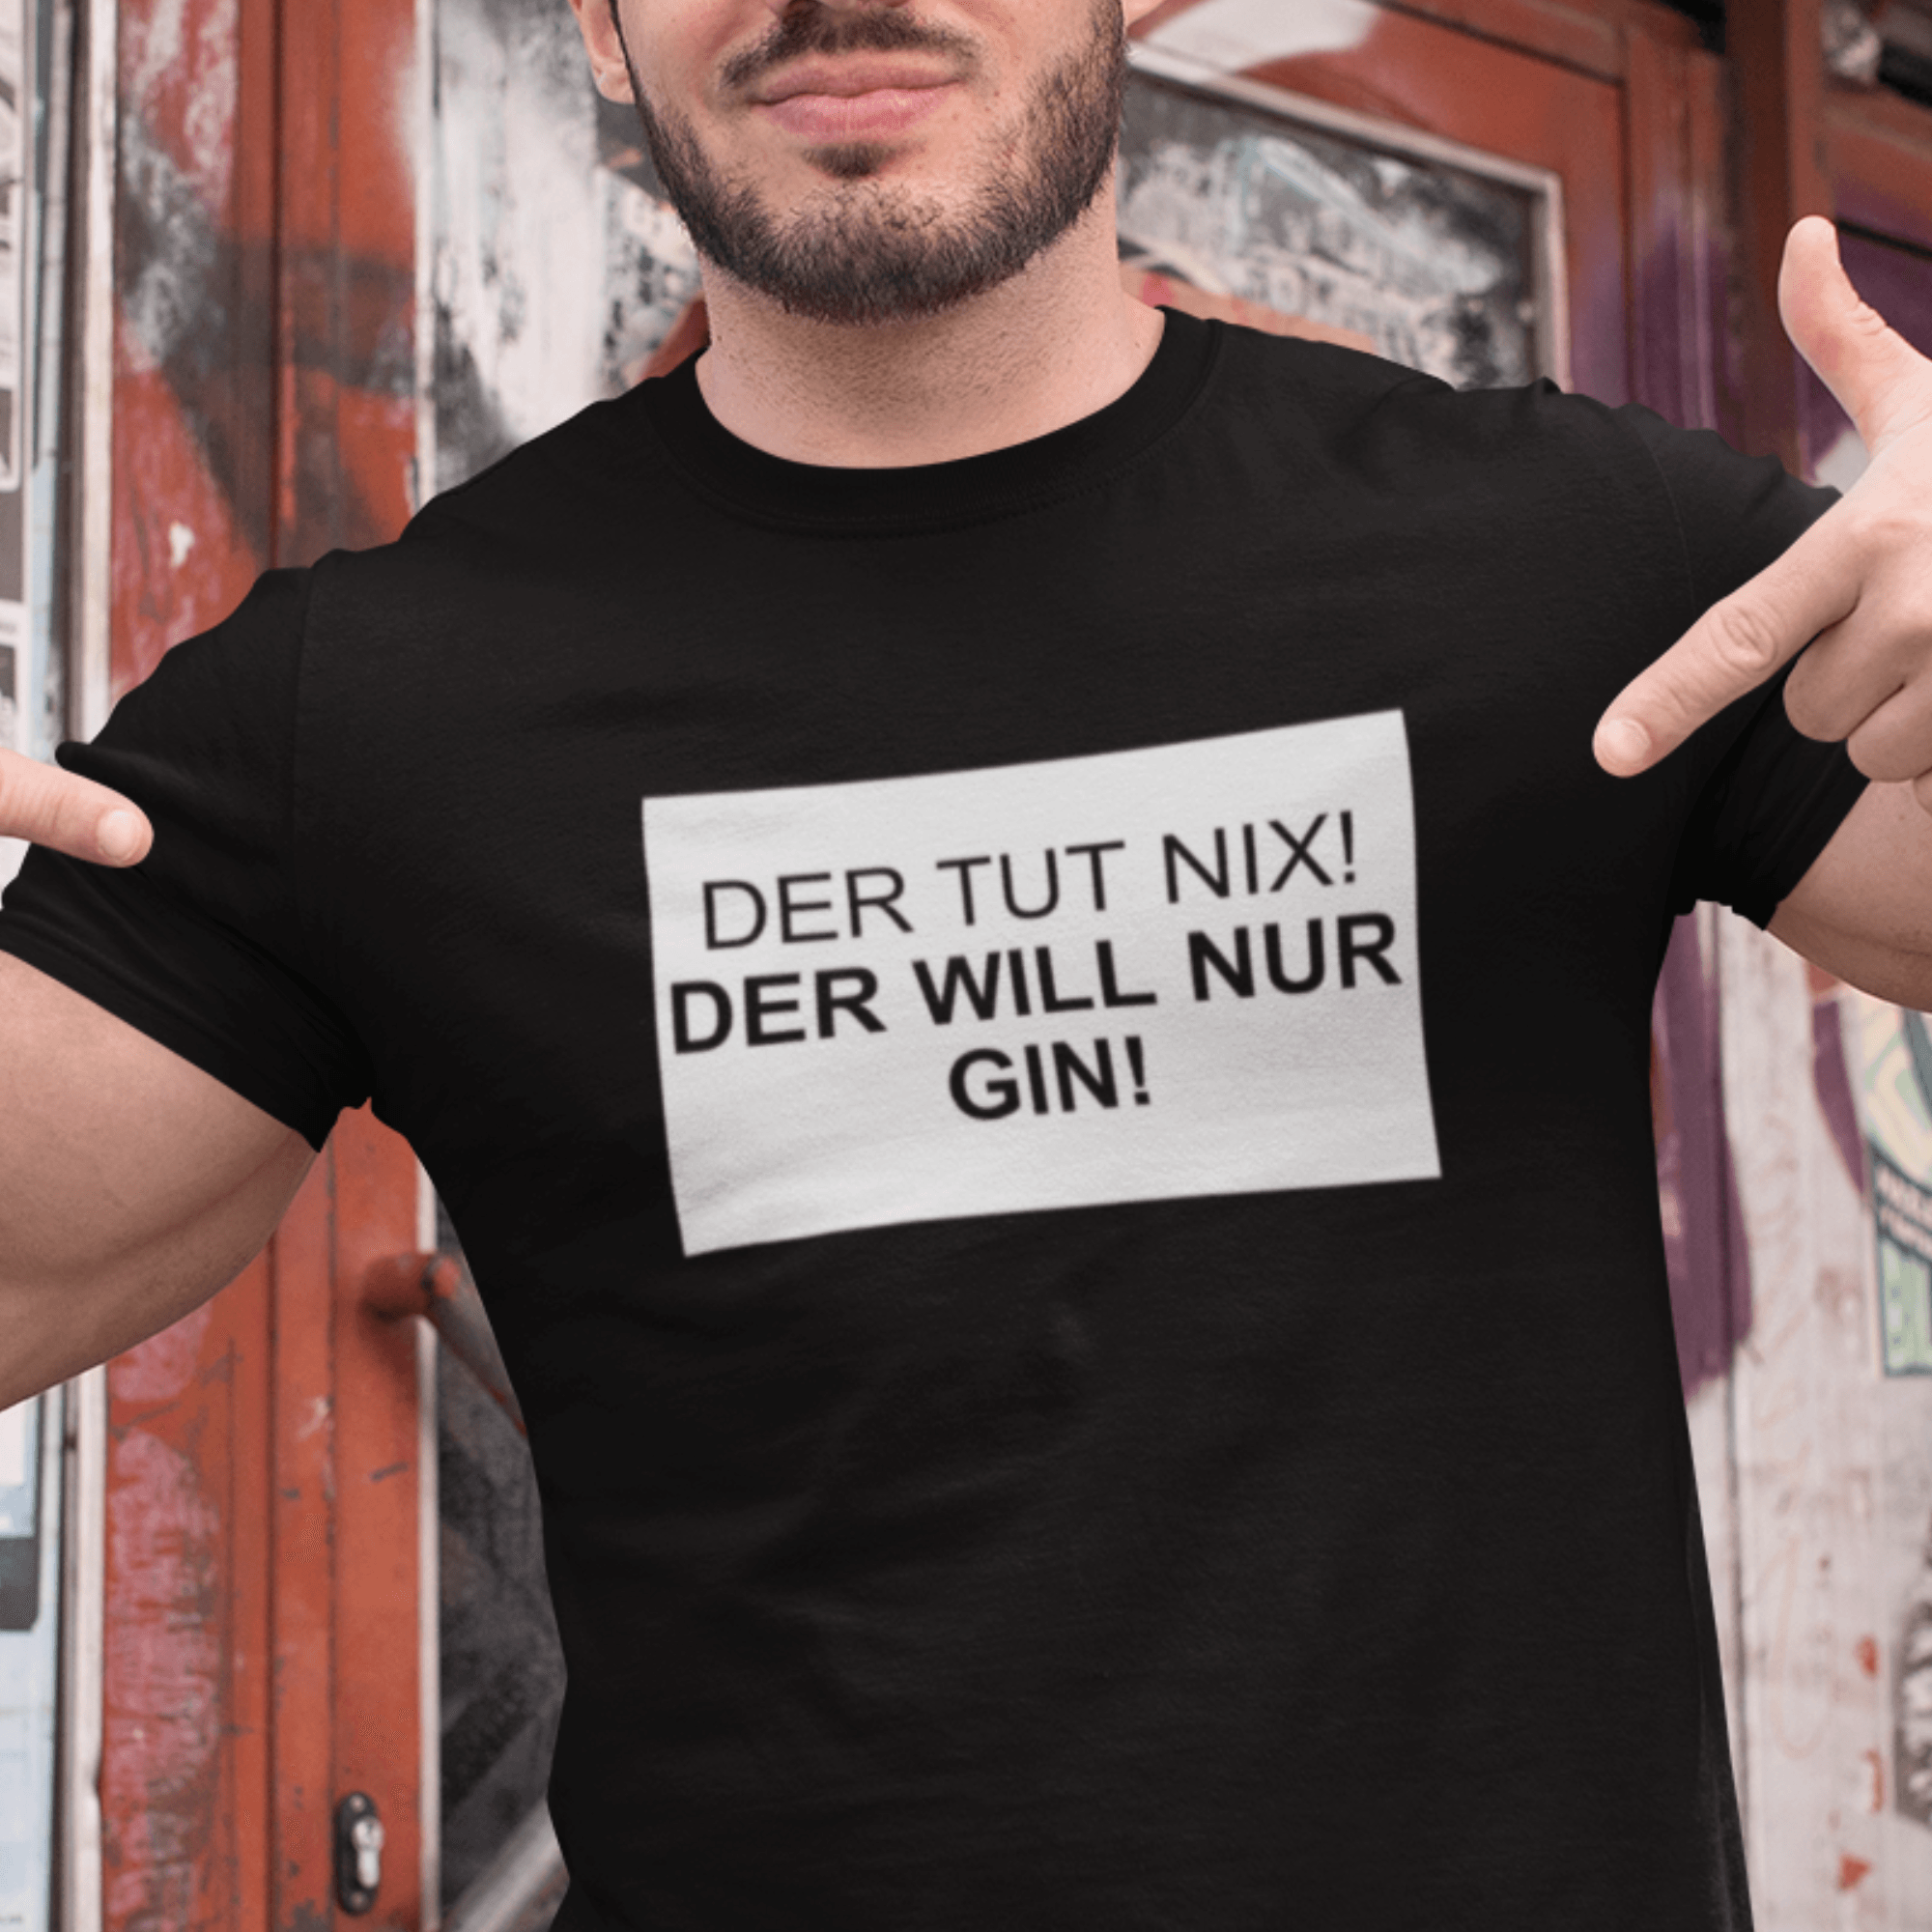 DER TUT NIX! GIN - Herren Shirt - einschenken24.de